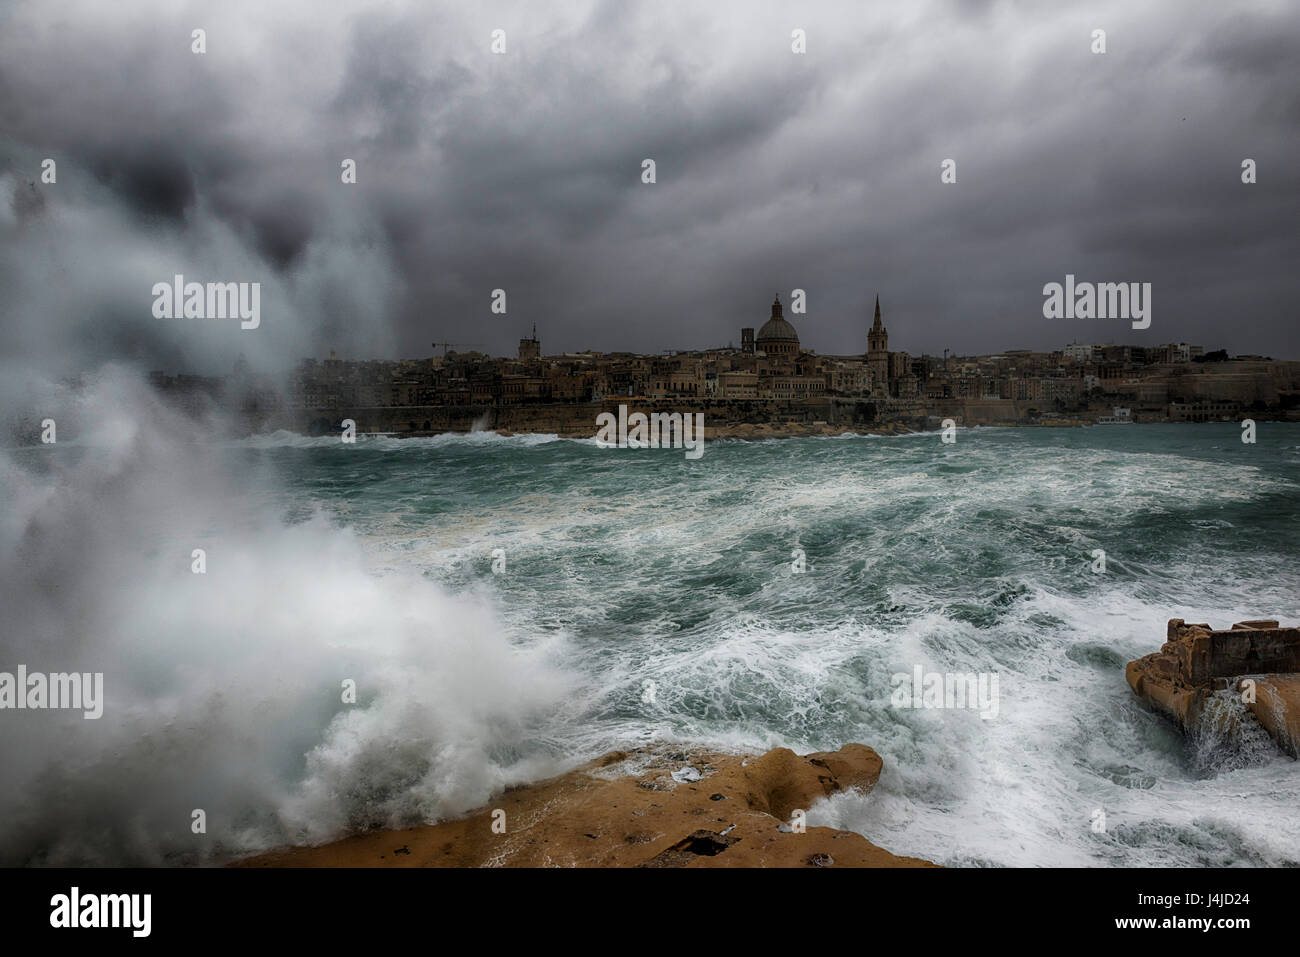 Vue de La Valette, capitale de Malte une. Photo a été prise à partir de Tigne Point à Sliema, lors d'une tempête. Banque D'Images